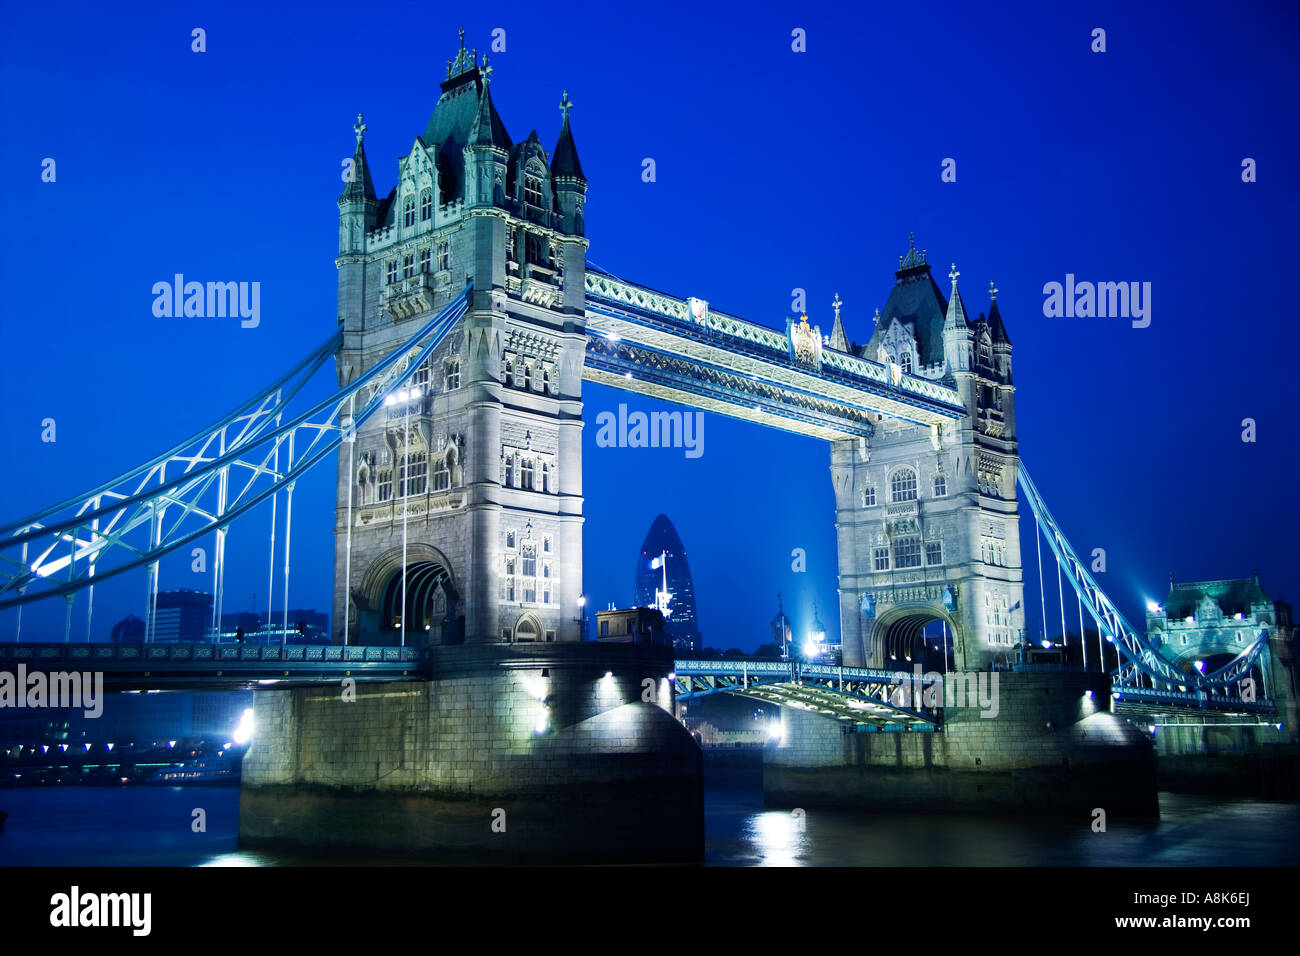 Nuit avec ciel bleu profond crépuscule d'allumé le Tower Bridge à l'ensemble de la city de Londres Banque D'Images